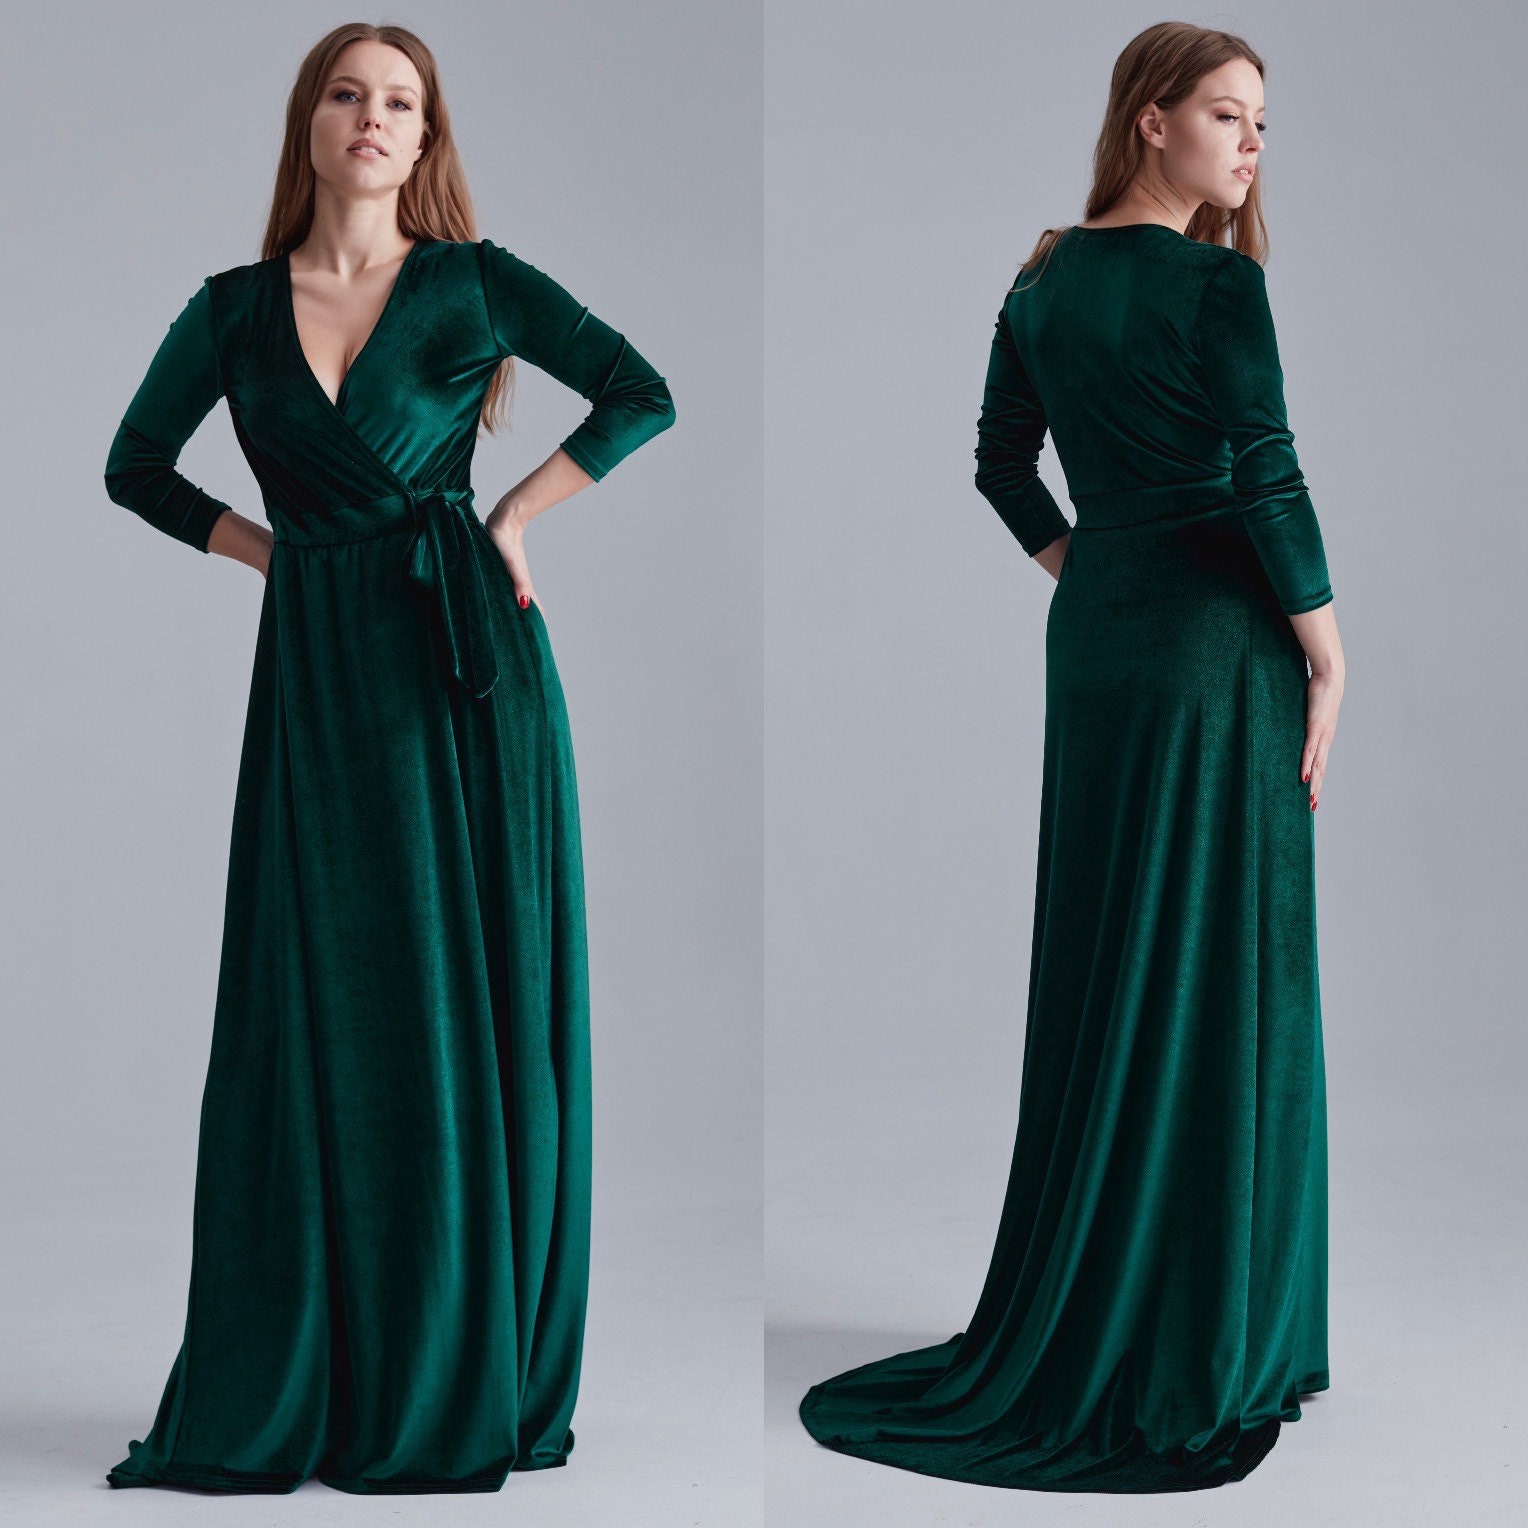 Emerald Green Velvet Dress With Train Long Sleeve Velvet - Etsy UK